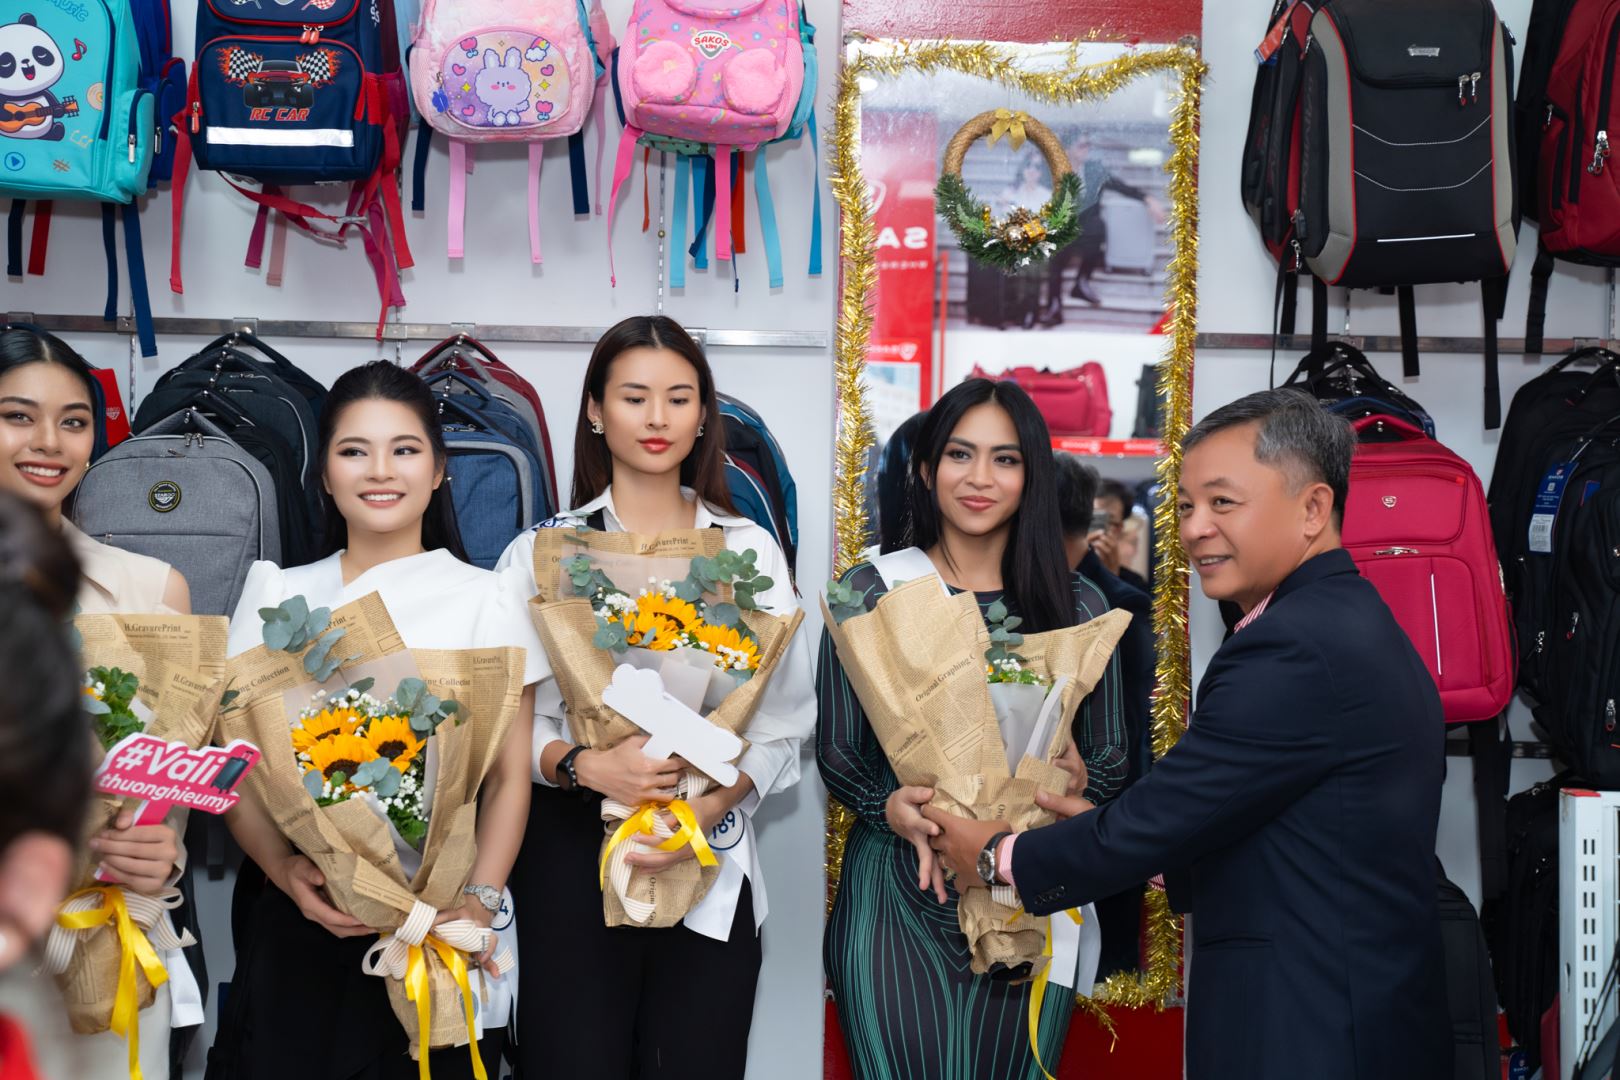 Thí sinh Hoa hậu Hoàn vũ Việt Nam 2023 hào hứng tham quan SAKOS Shop tại TP.HCM